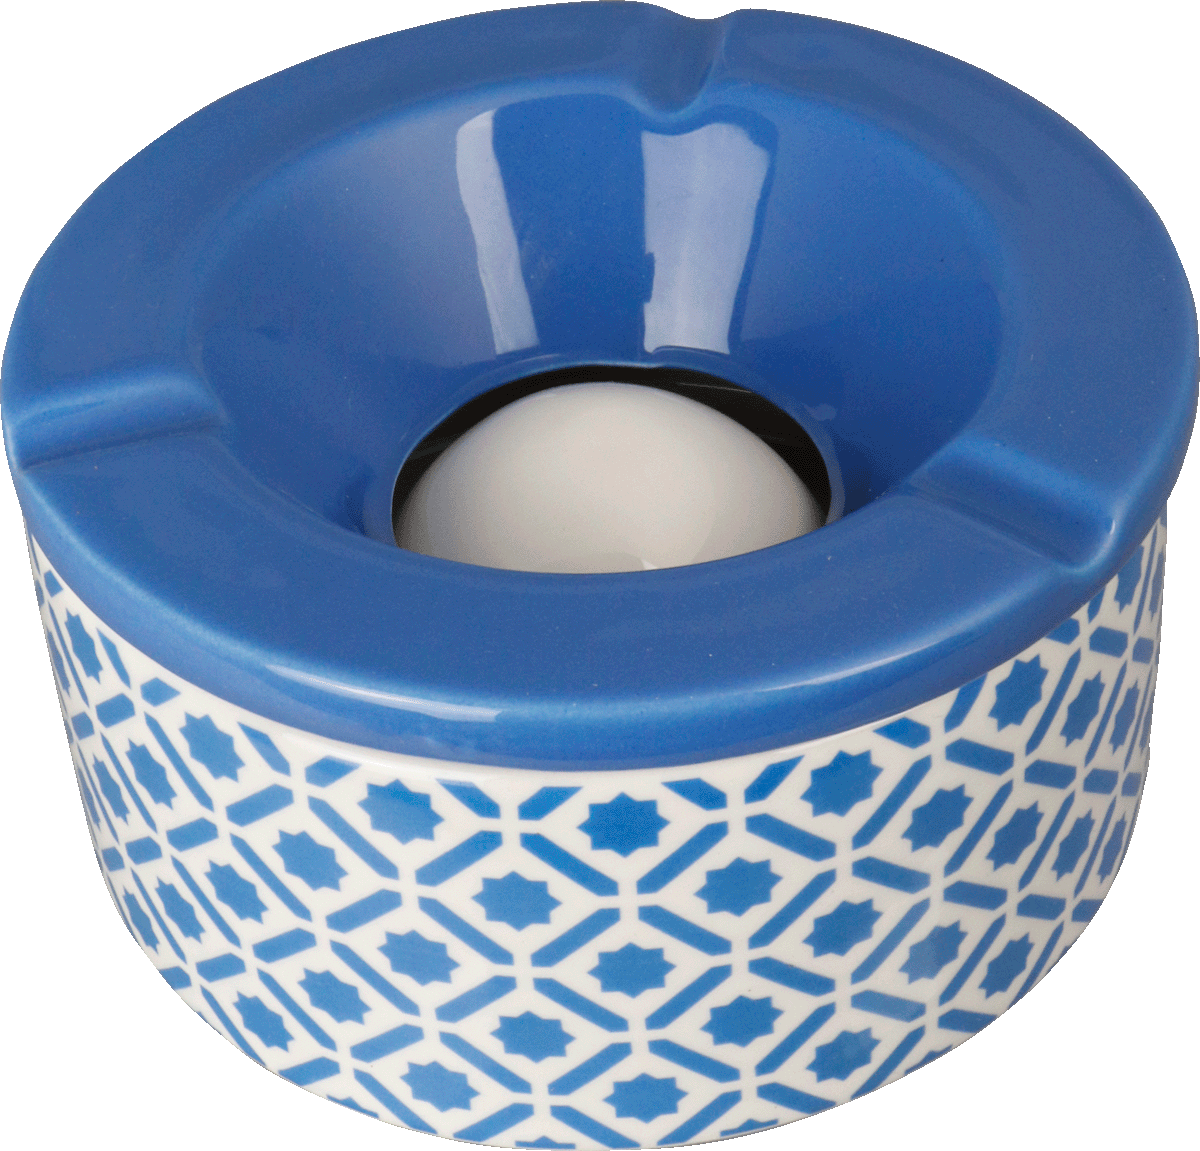 Windaschenbecher Keramik weiß/blau gemustert sortiert 12cm für 6,25 €